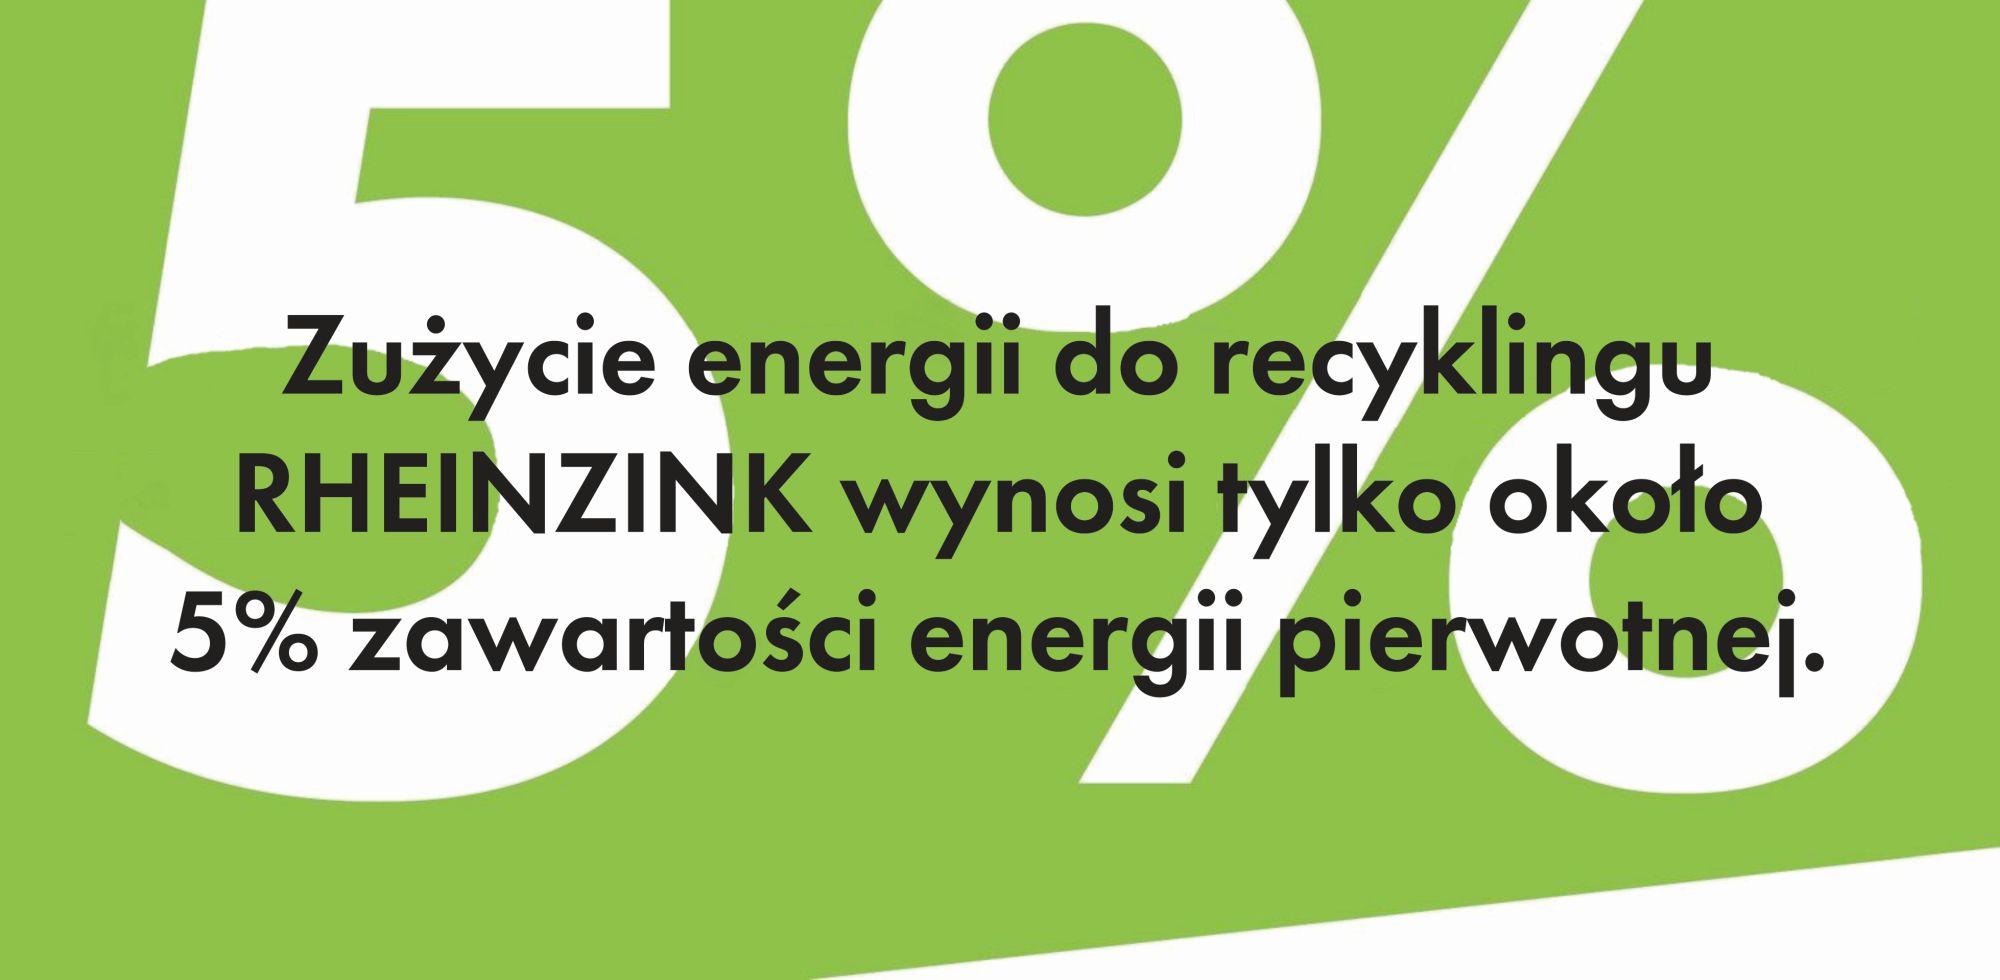 Zużycie energii do recyklingu RHEINZINK